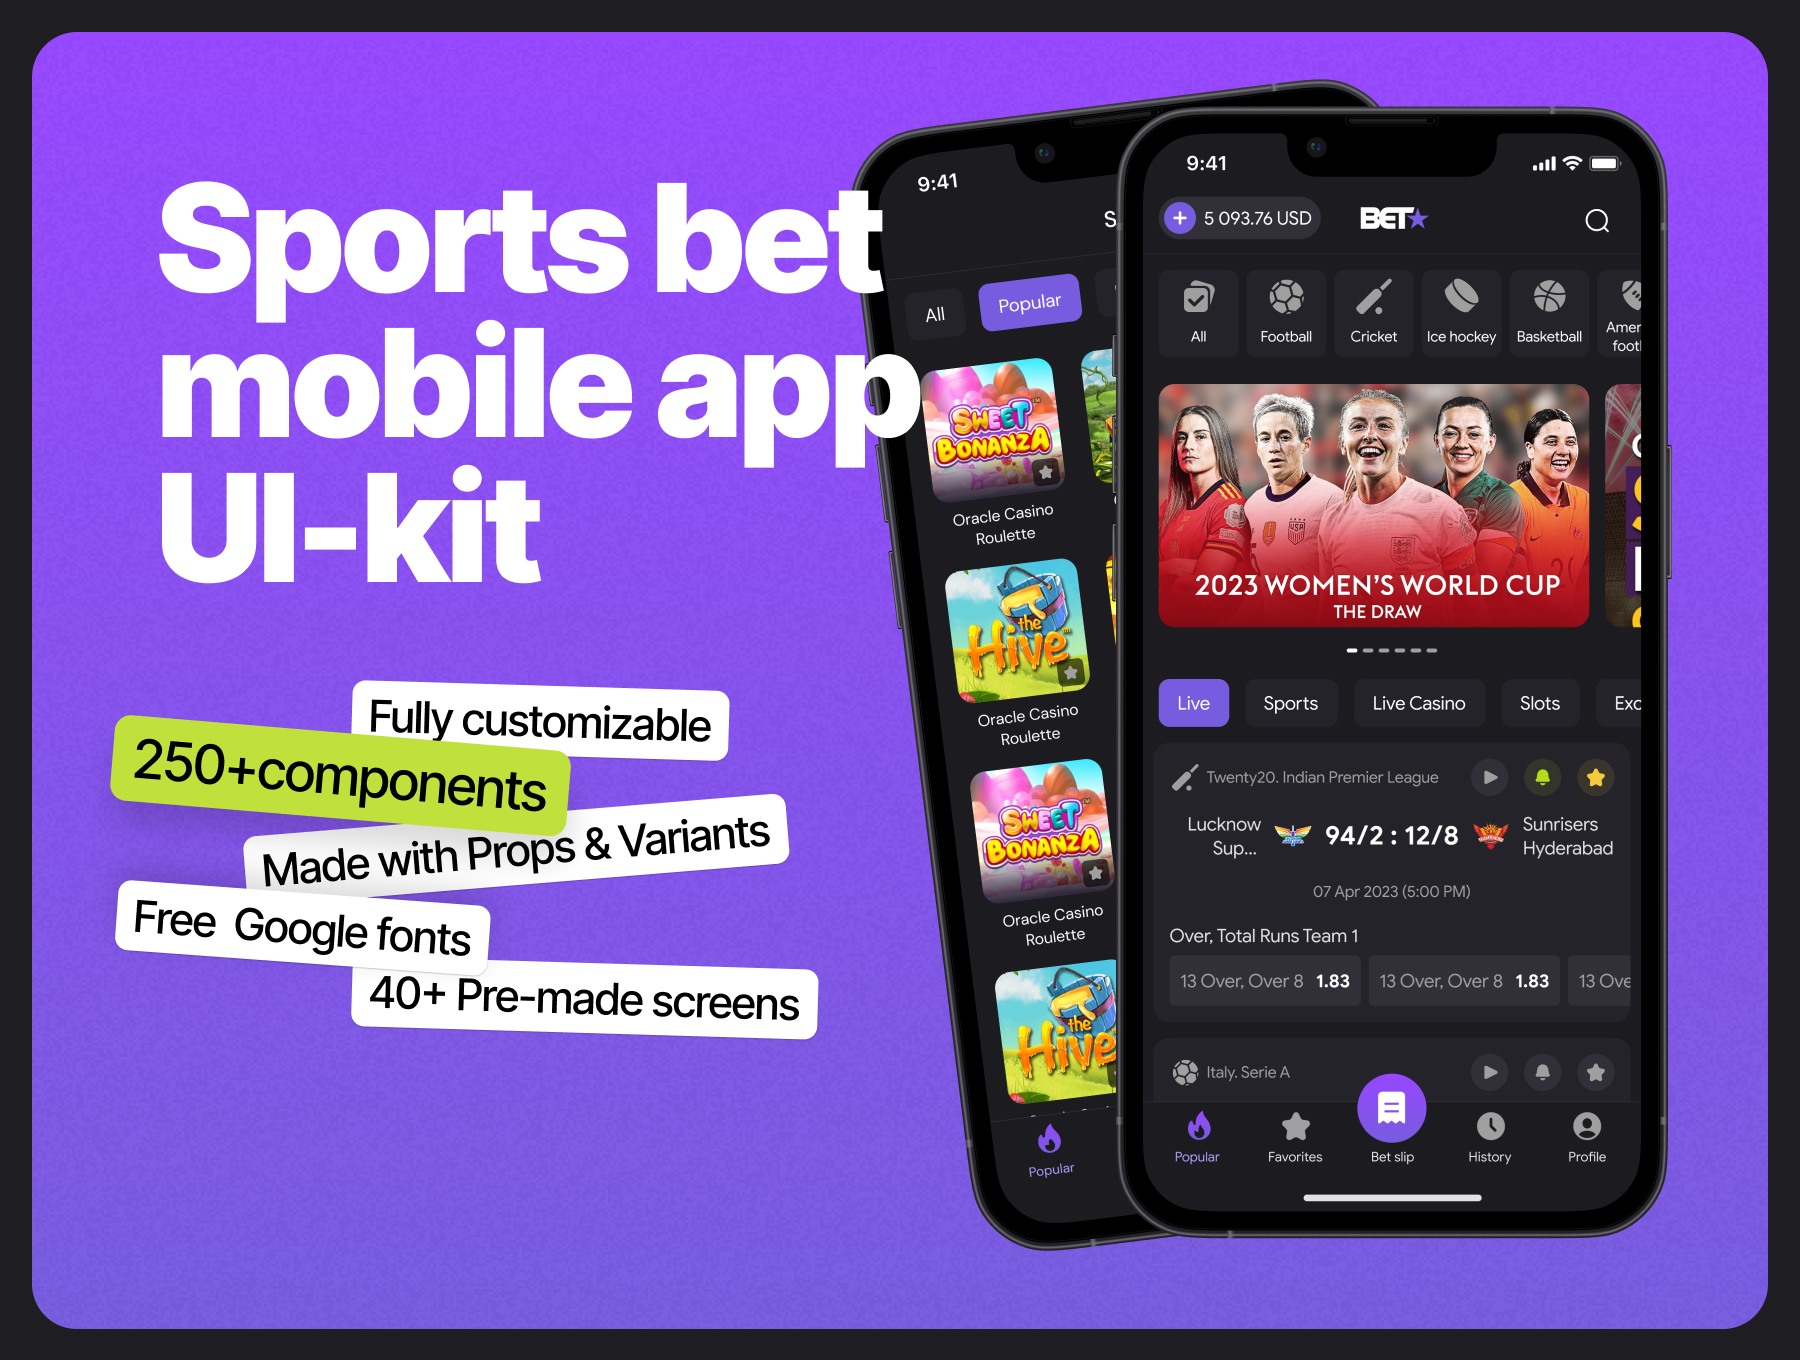 体育赌博移动应用UI套件 Sports bet mobile app UI Kit figma格式-UI/UX-到位啦UI